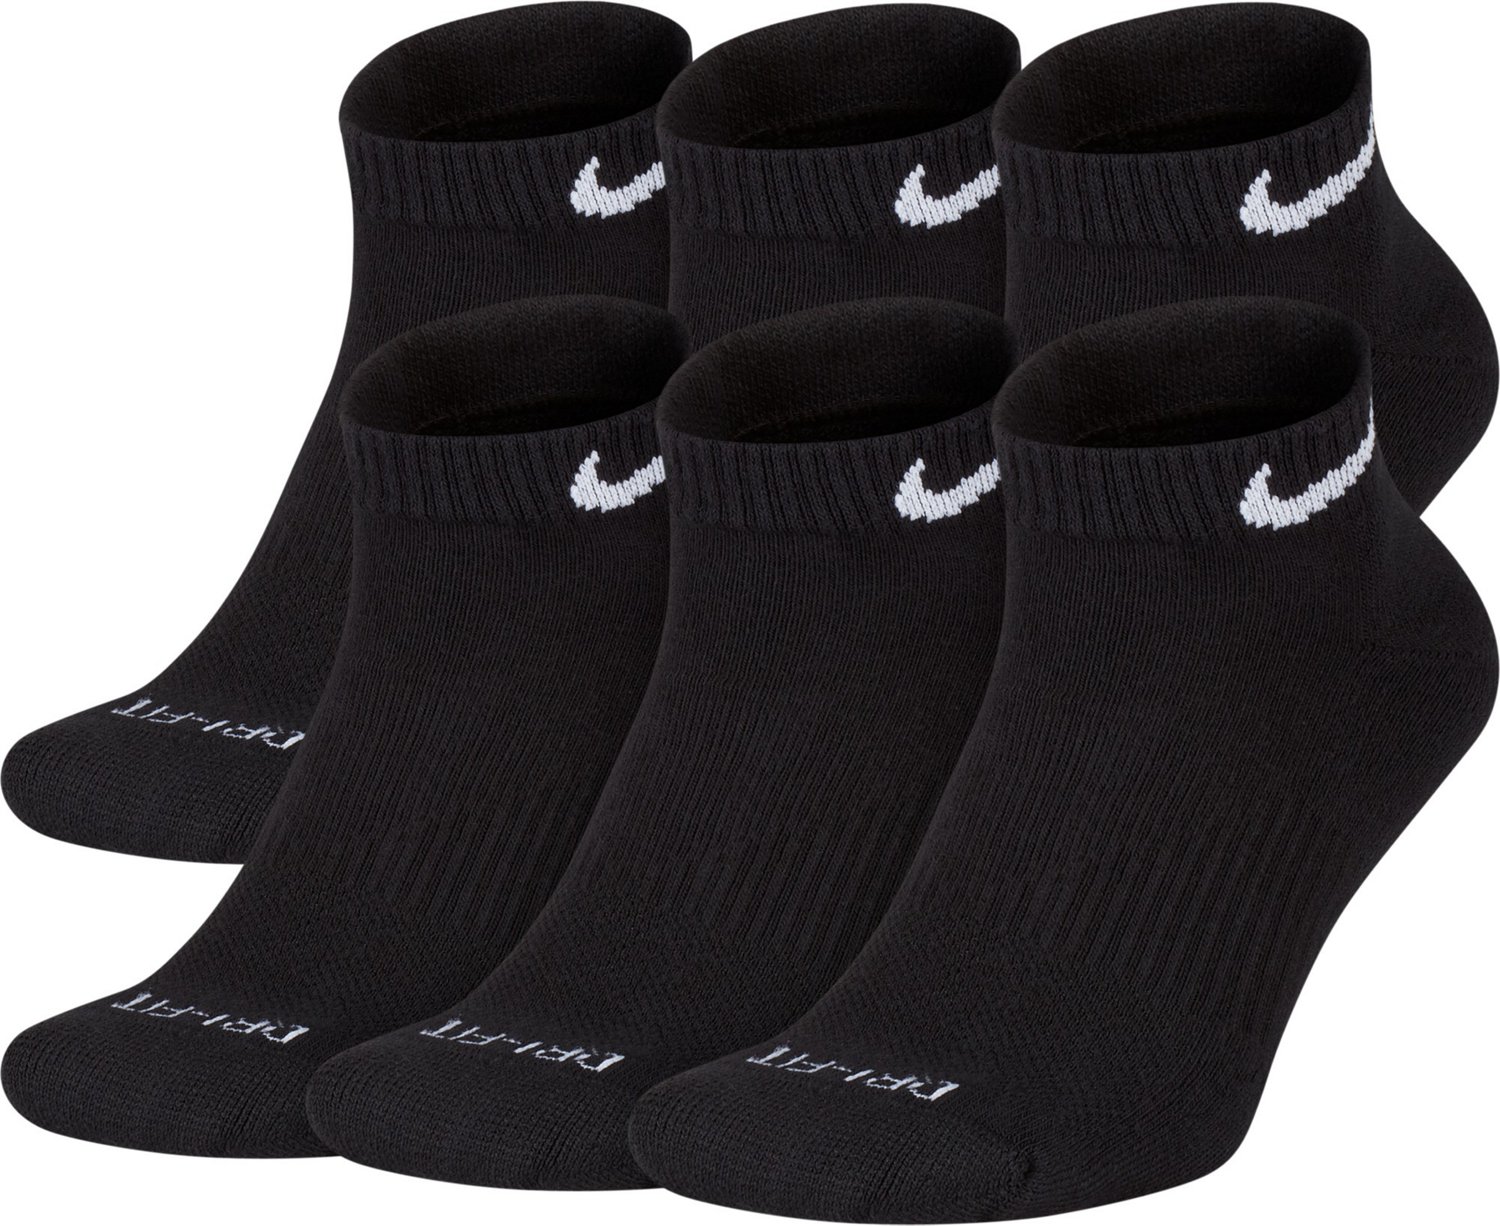 Nike Everyday Plus Cushion Training Socks 6 | Academy